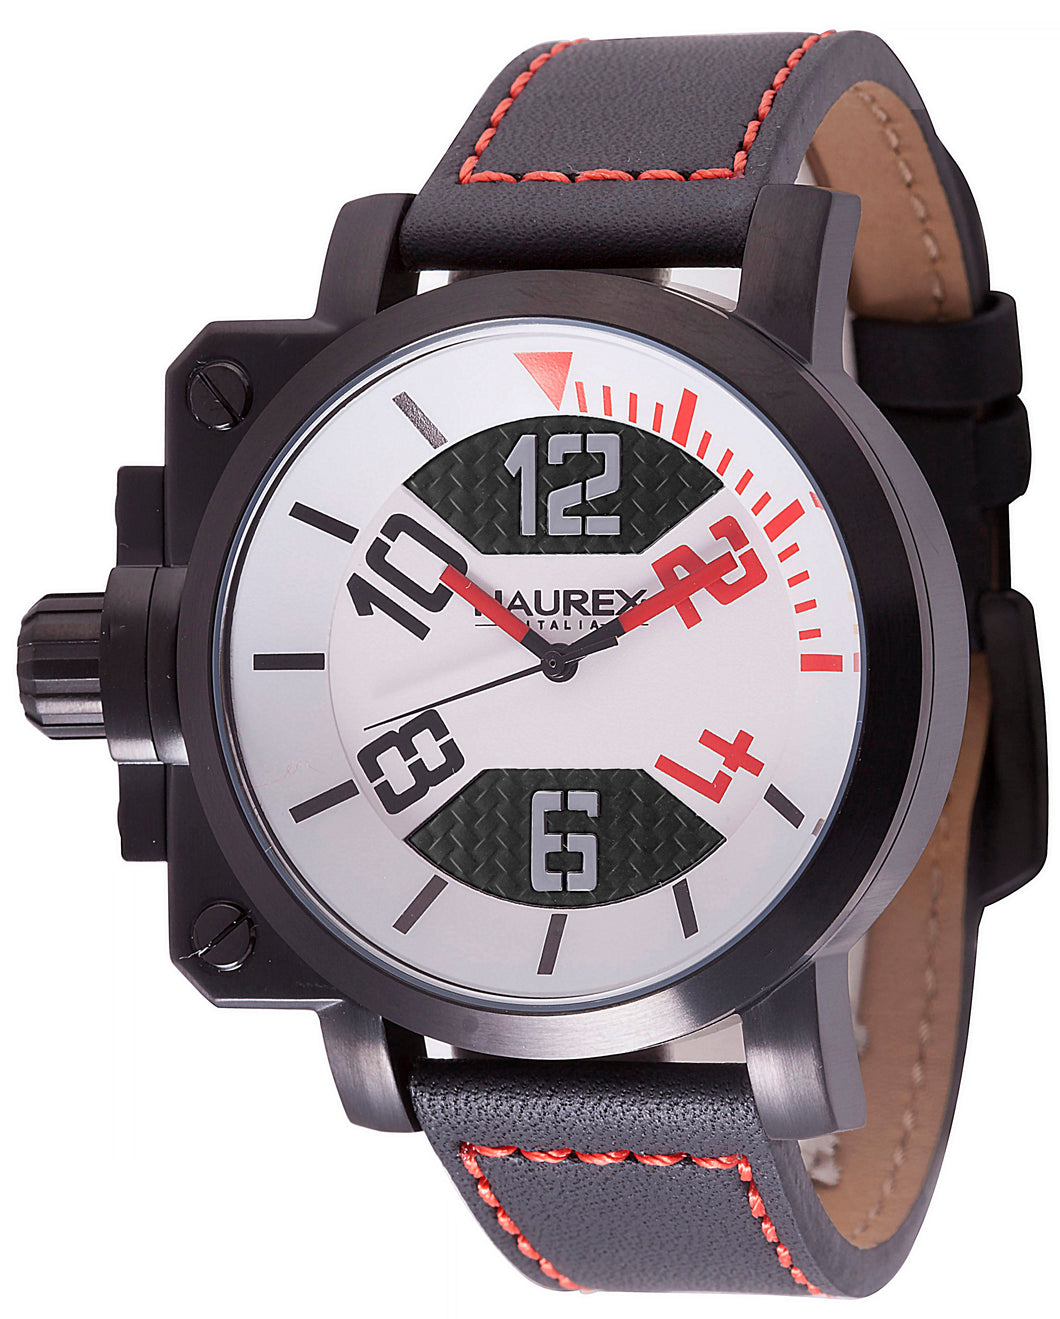 Haurex Italy Gun Men's Black/Red Dial Black Strap Watch